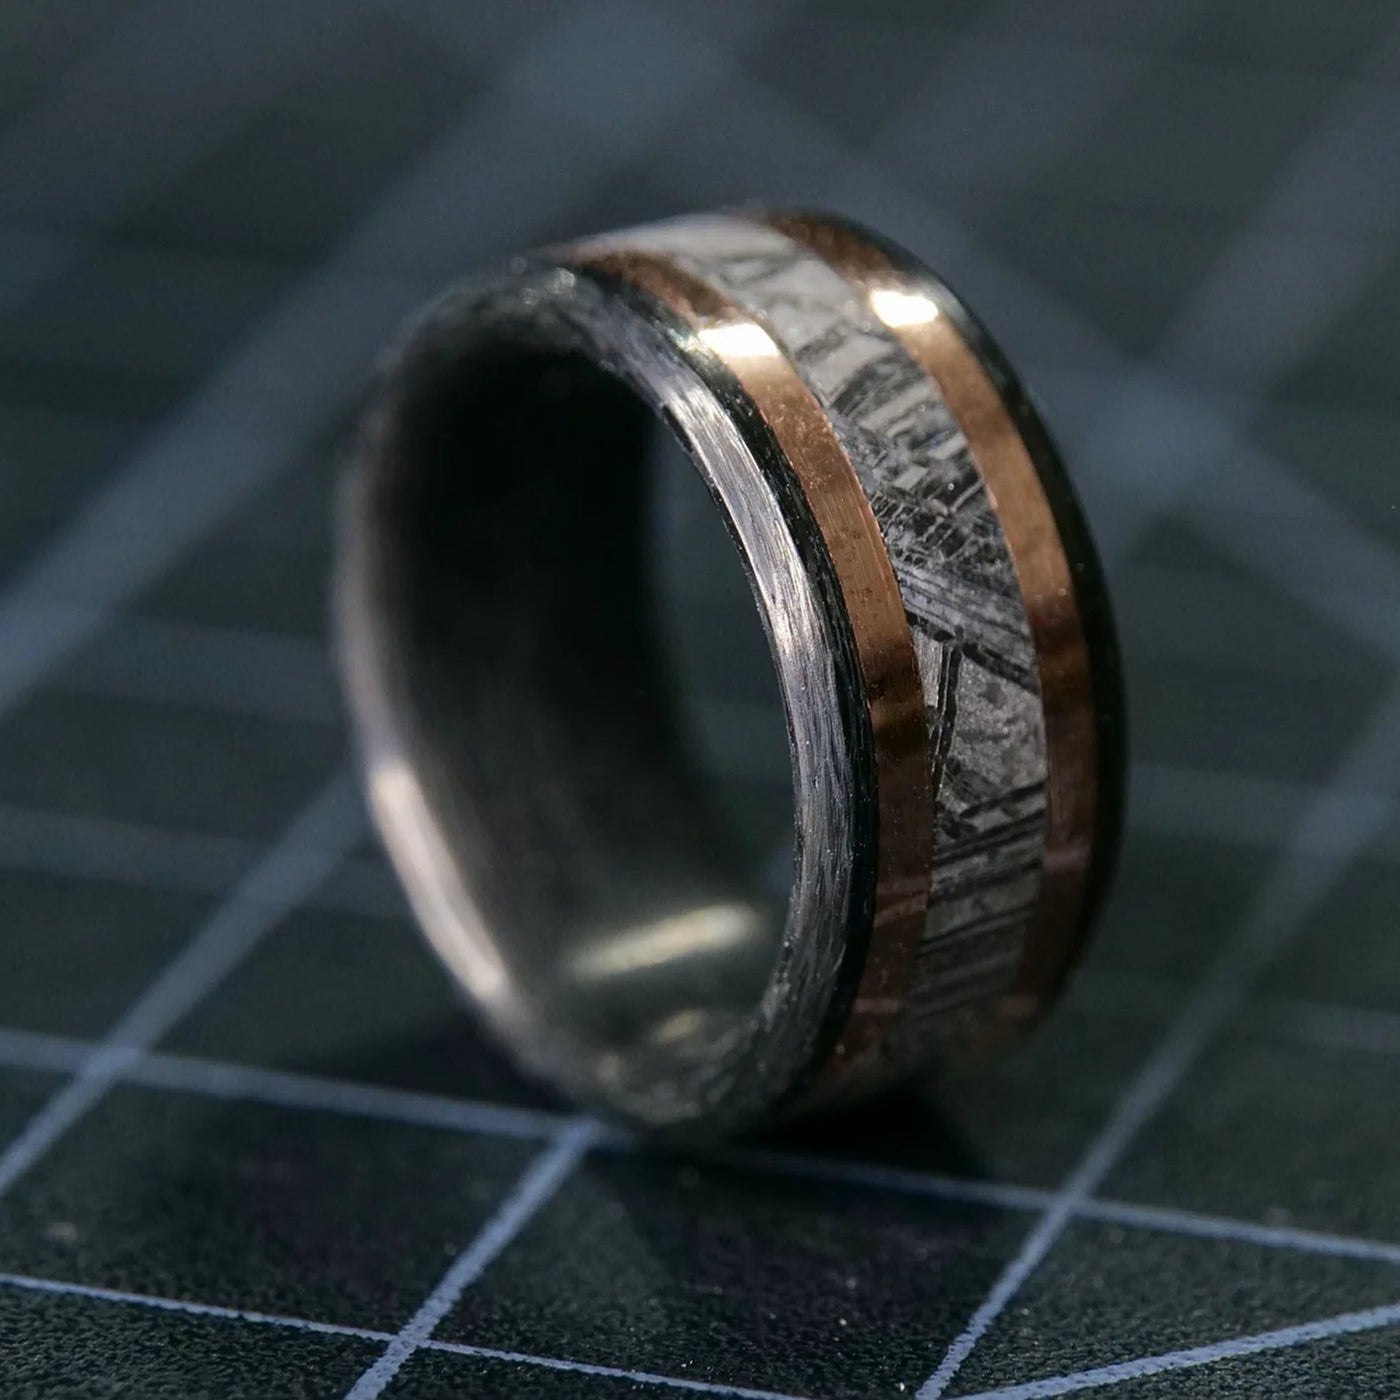 Carbon Fiber, Rose Gold, and Meteorite Ring - Patrick Adair Designs